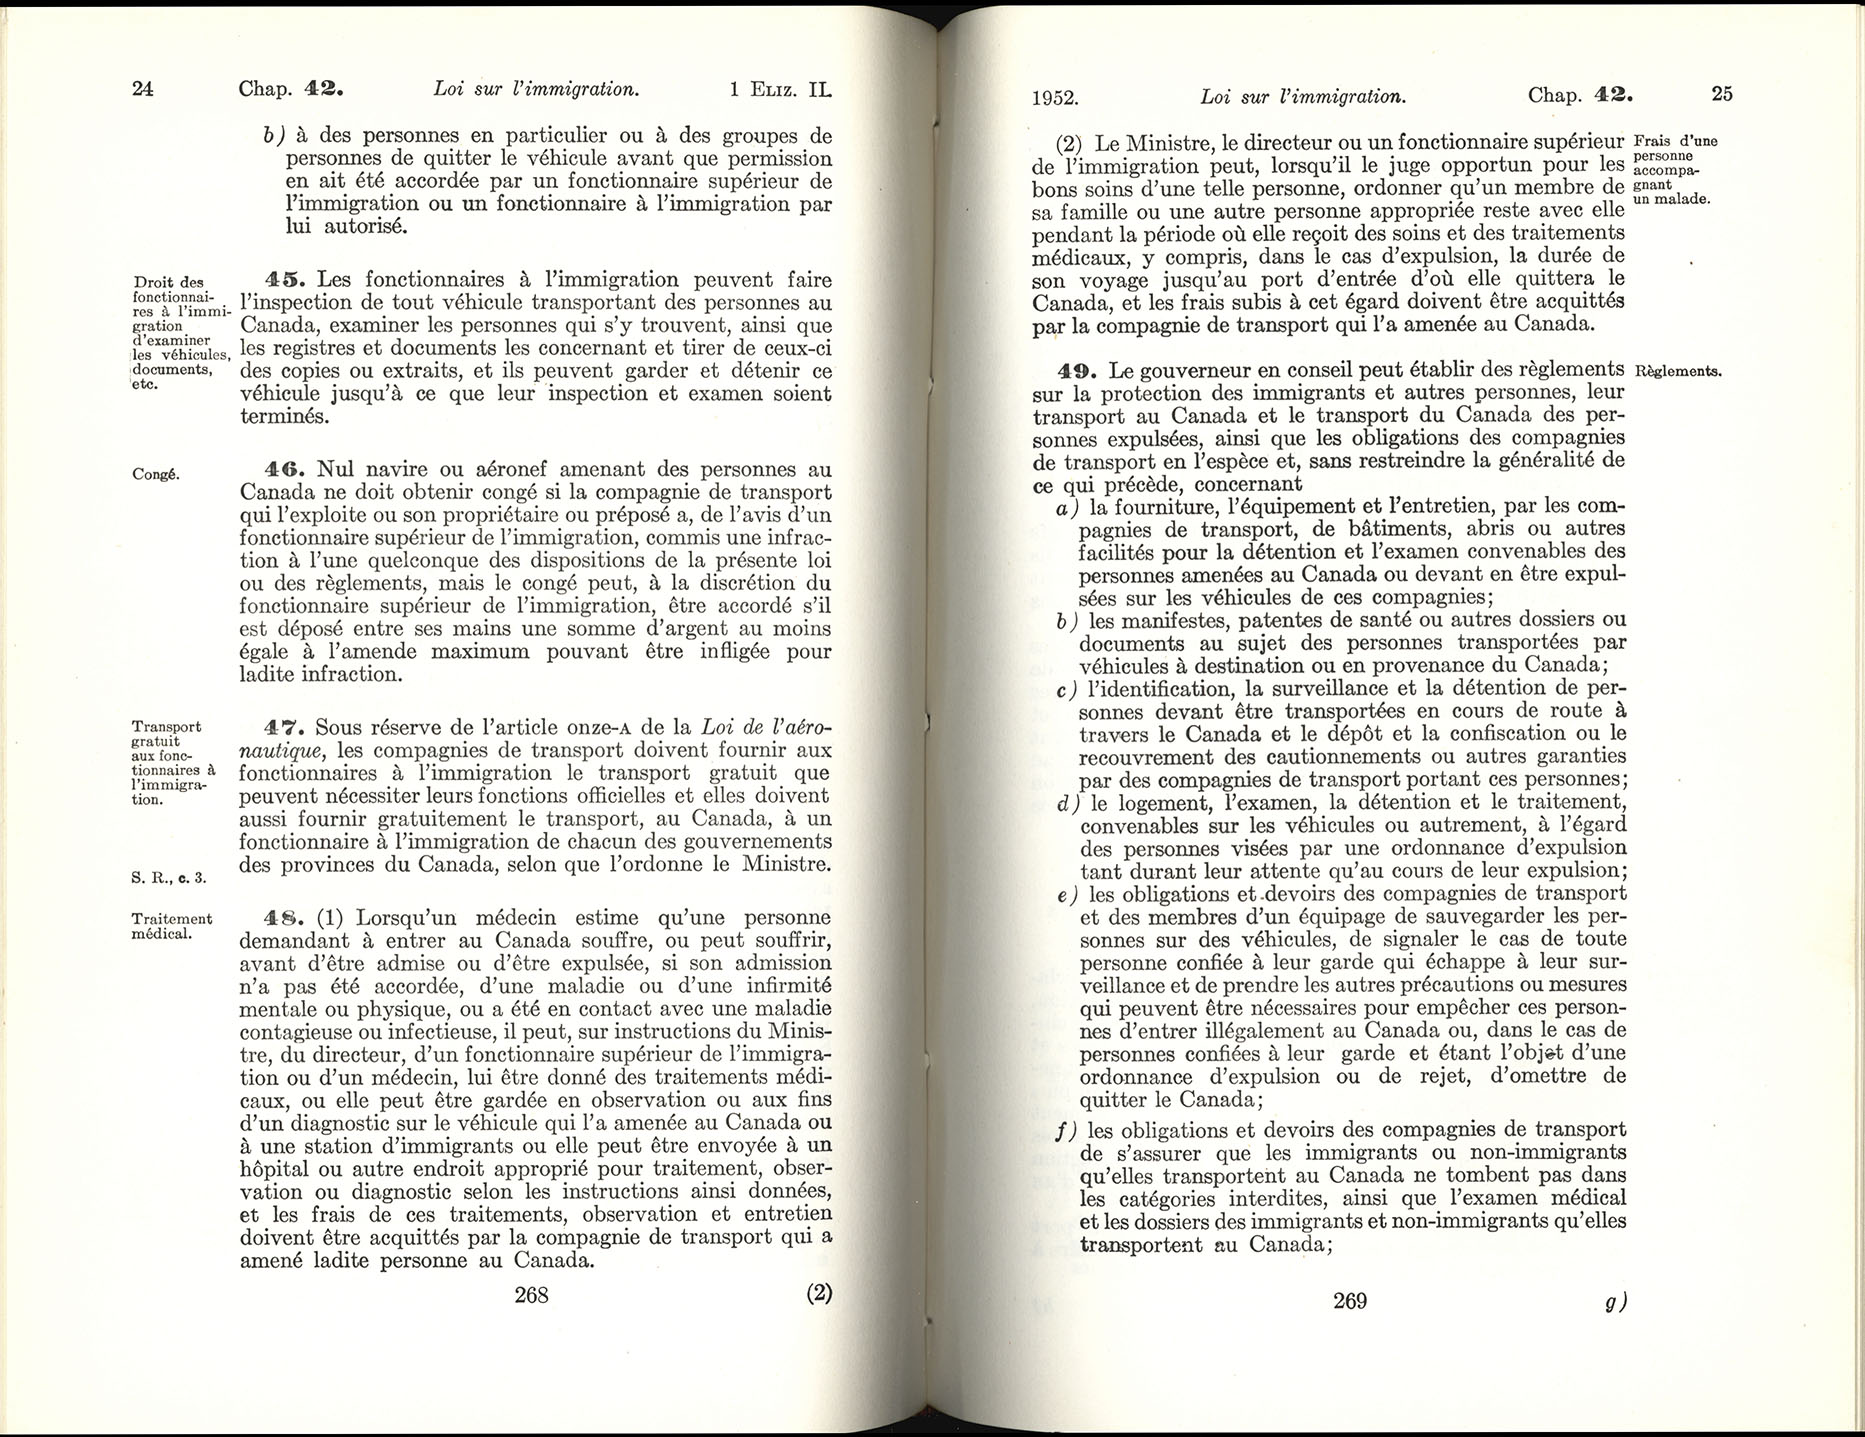 Chap 42 Page 268, 269 Loi sur l’immigration, 1952